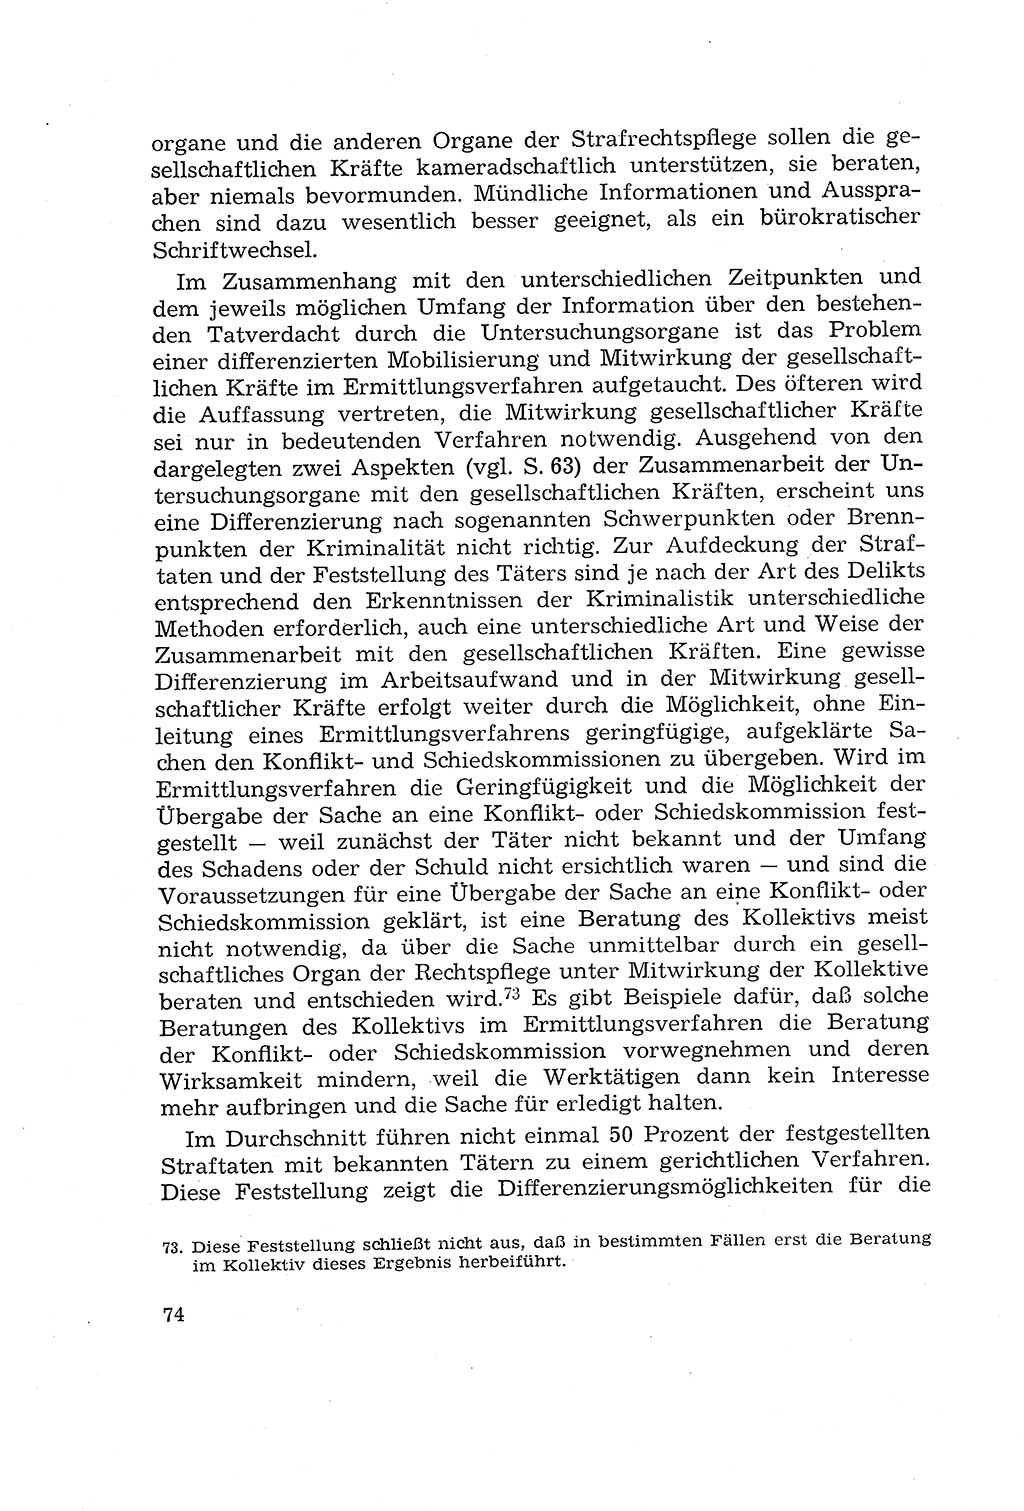 Die Mitwirkung der Werktätigen am Strafverfahren [Deutsche Demokratische Republik (DDR)] 1966, Seite 74 (Mitw. Str.-Verf. DDR 1966, S. 74)